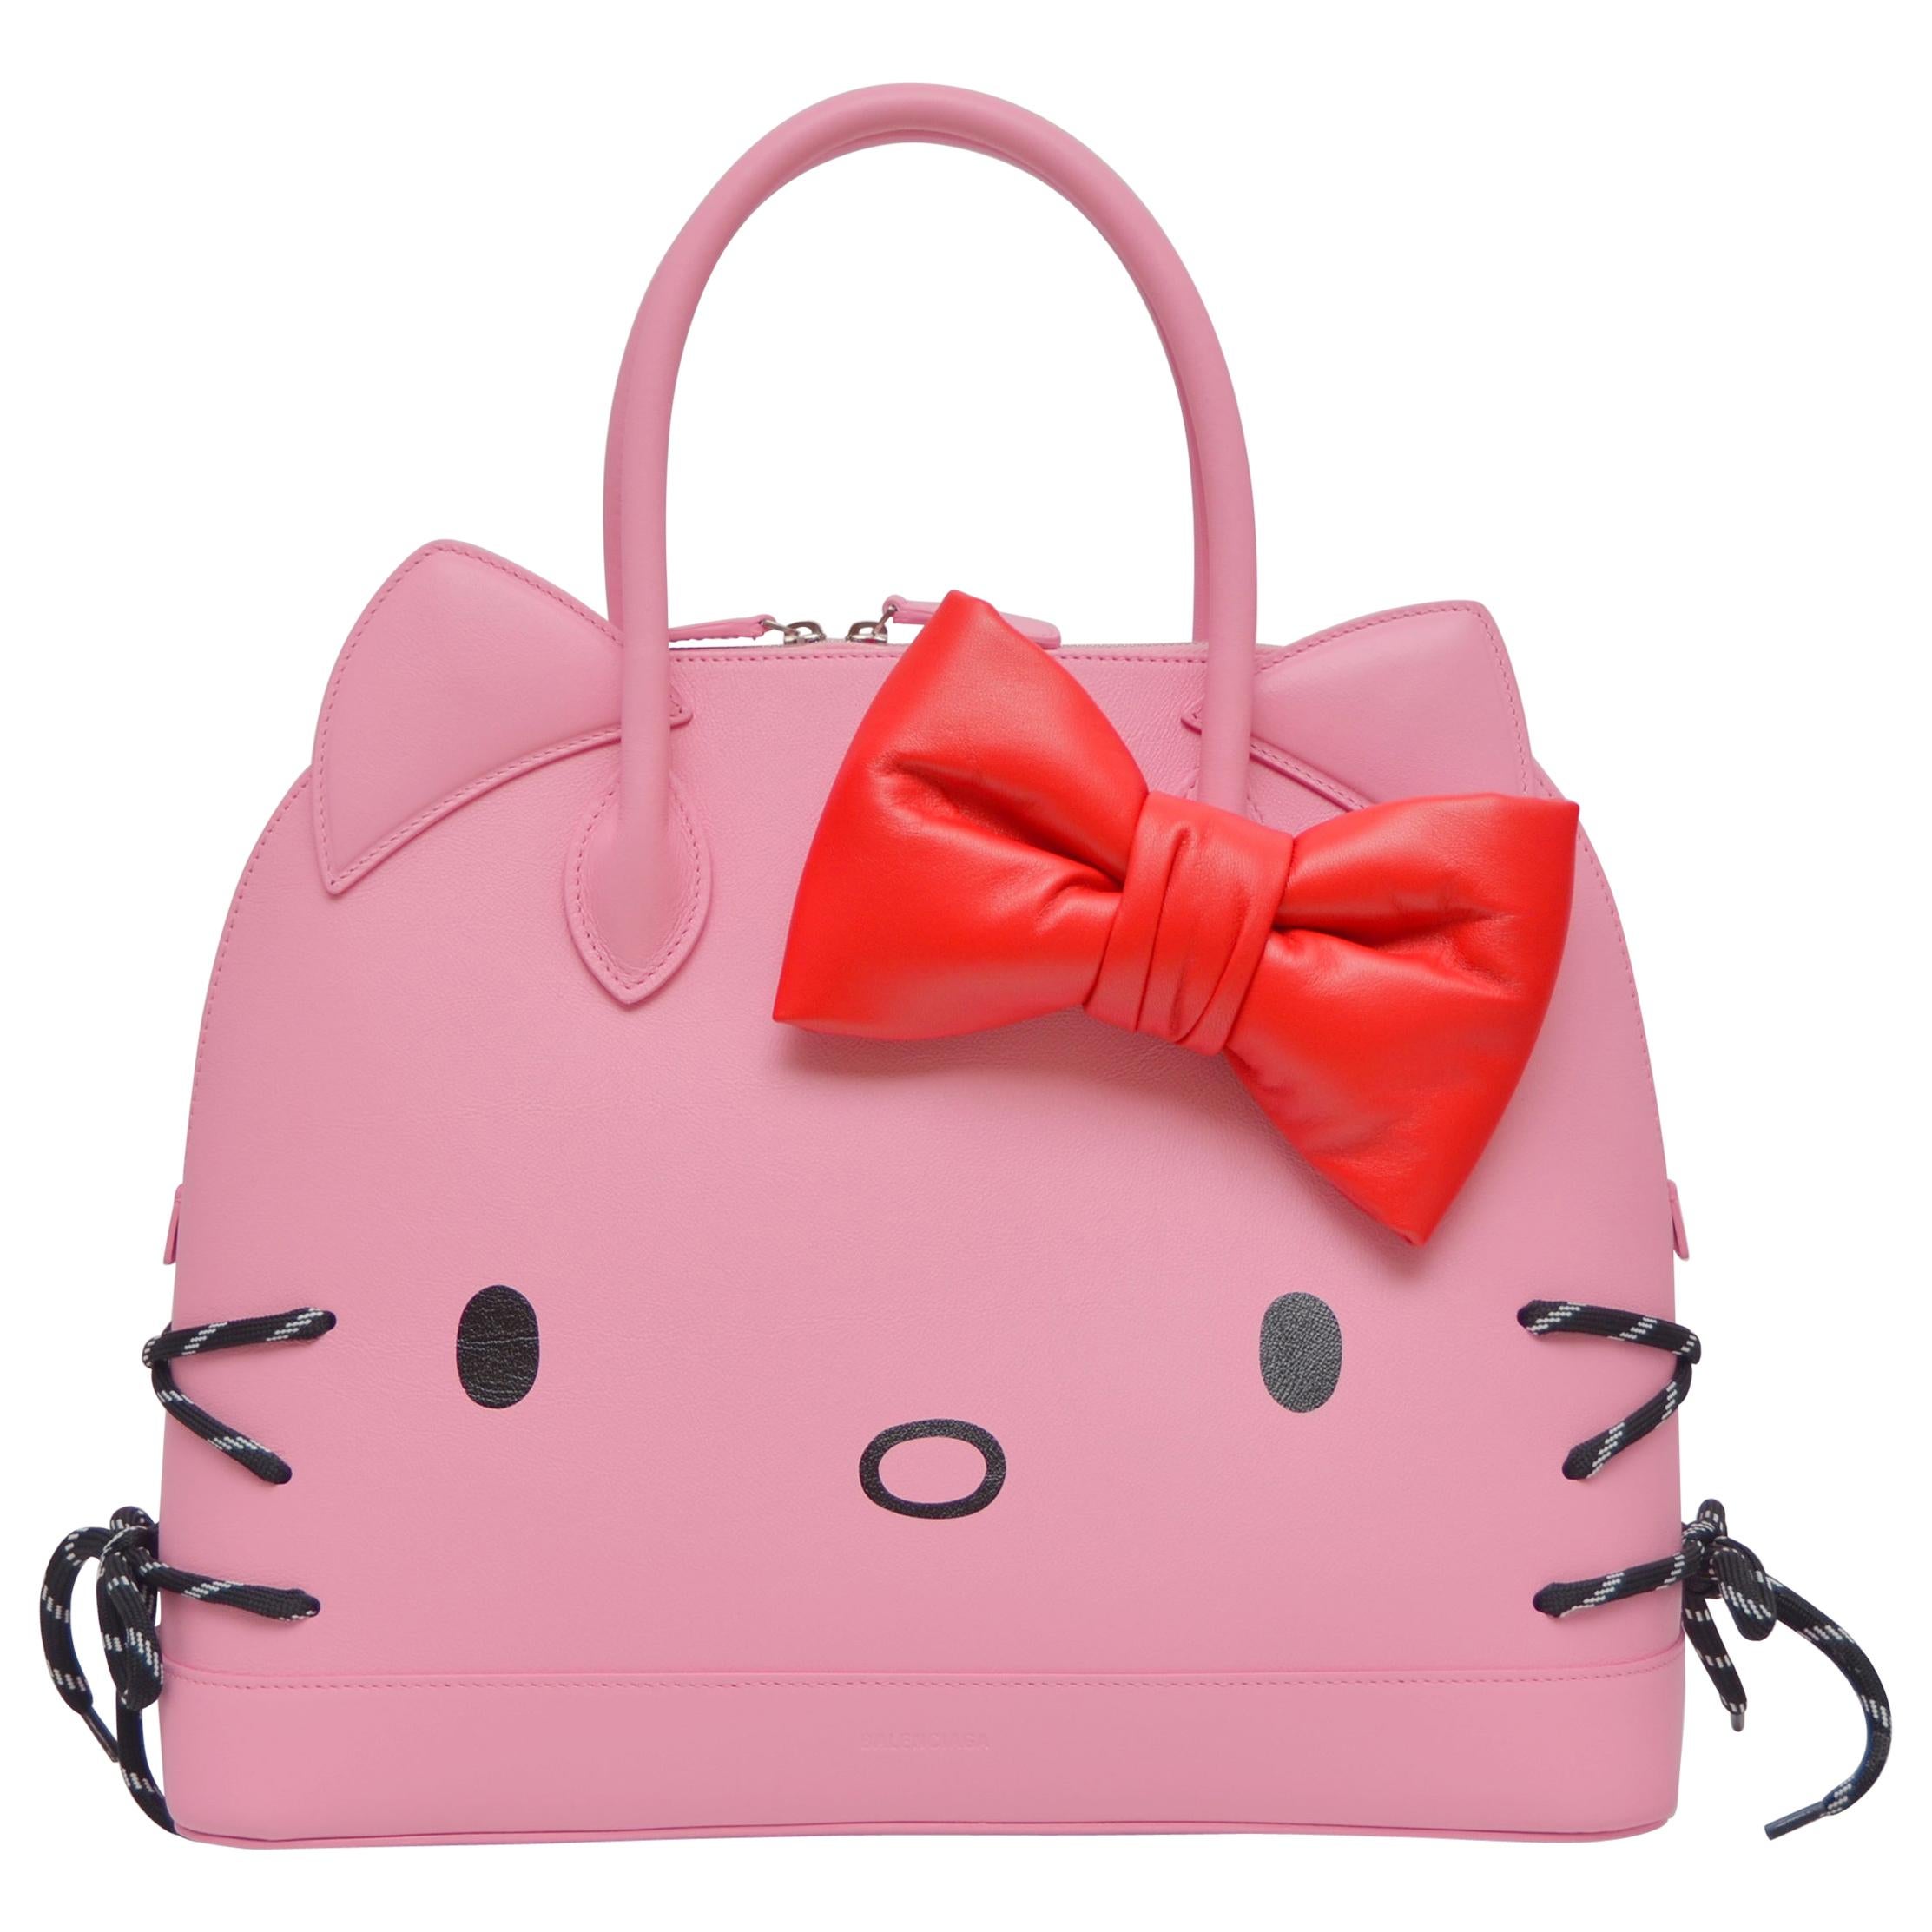 Balenciaga's Hello Kitty Bags for Men PFW SS20